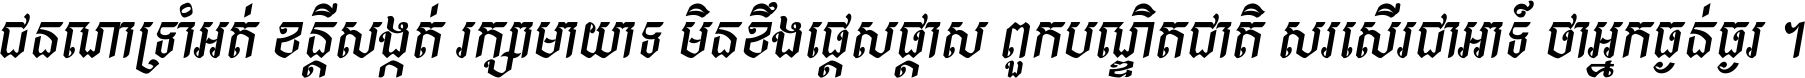 Kh Baphnom Chhuoktip New Italic